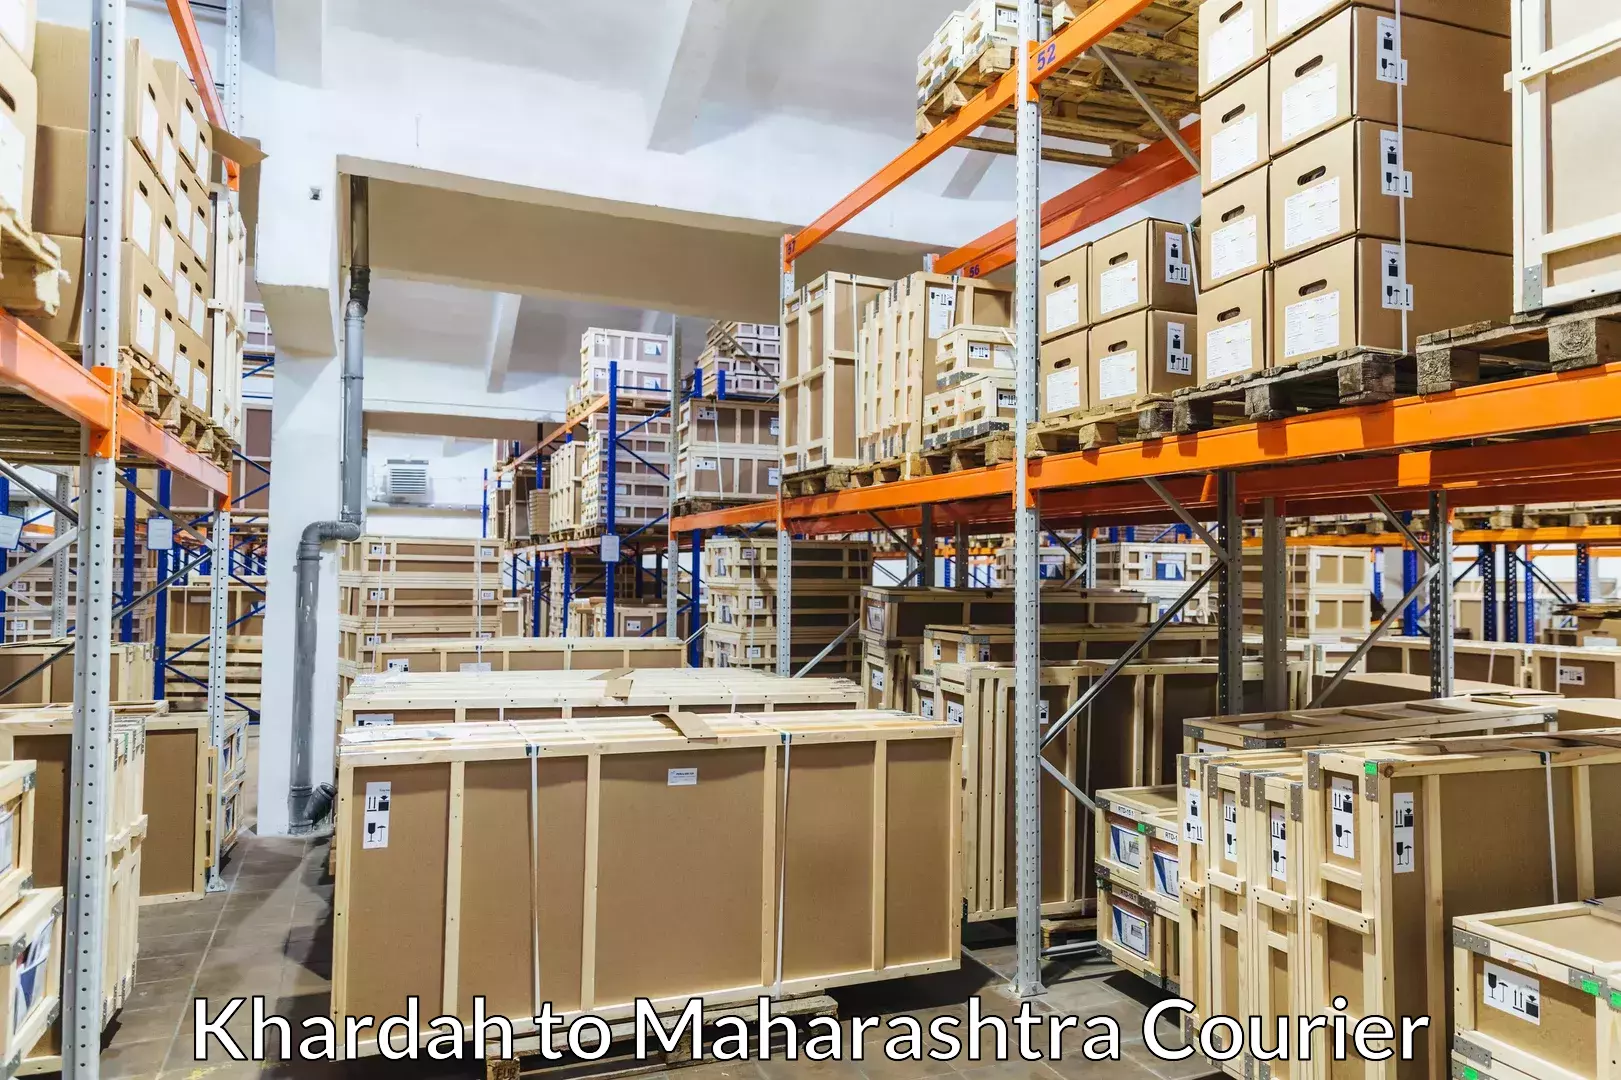 Luggage transport consulting Khardah to Maharashtra